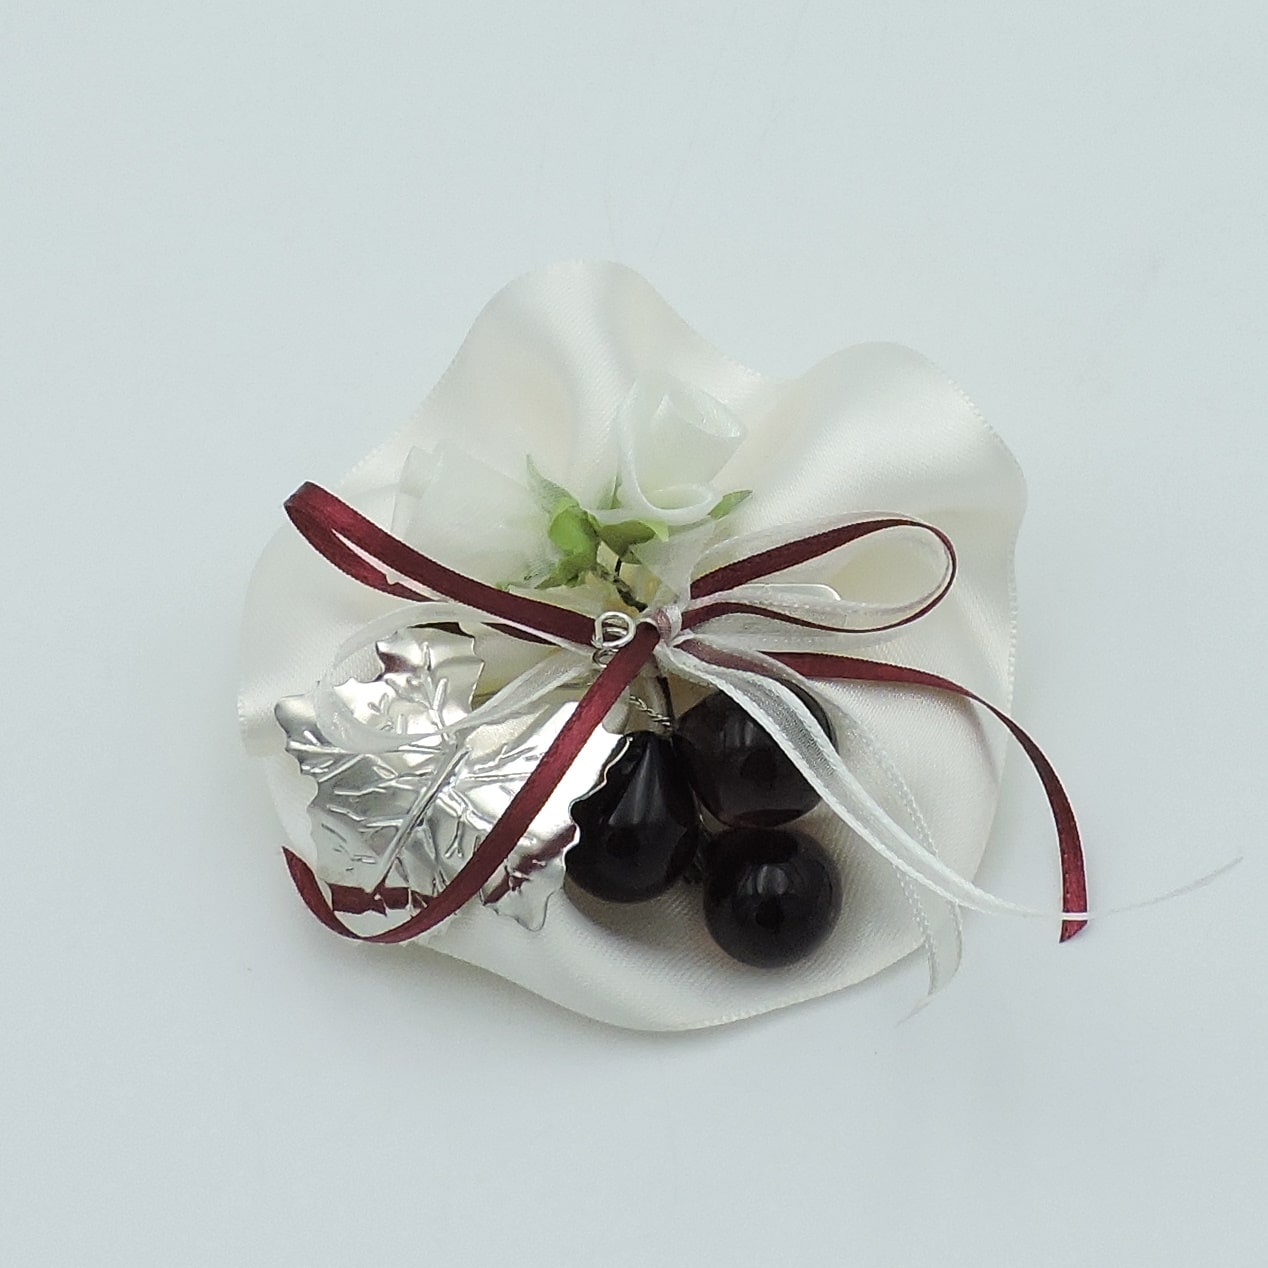 Bomboniera cresima con uva in vetro e foglia in argento